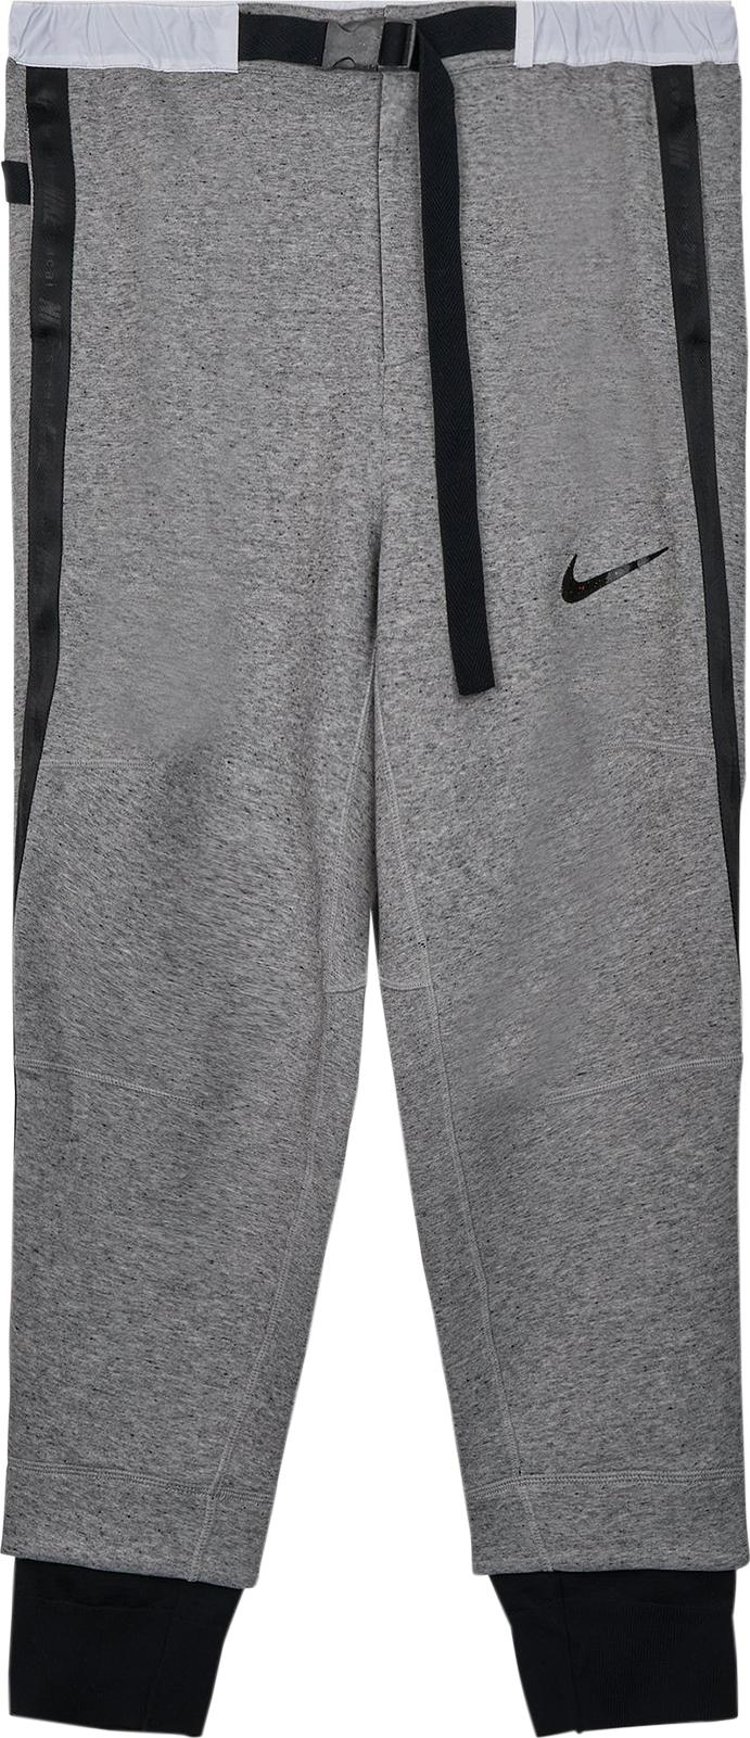 Брюки Nike x Sacai Fleece Pant 'Dark Grey', серый 34889